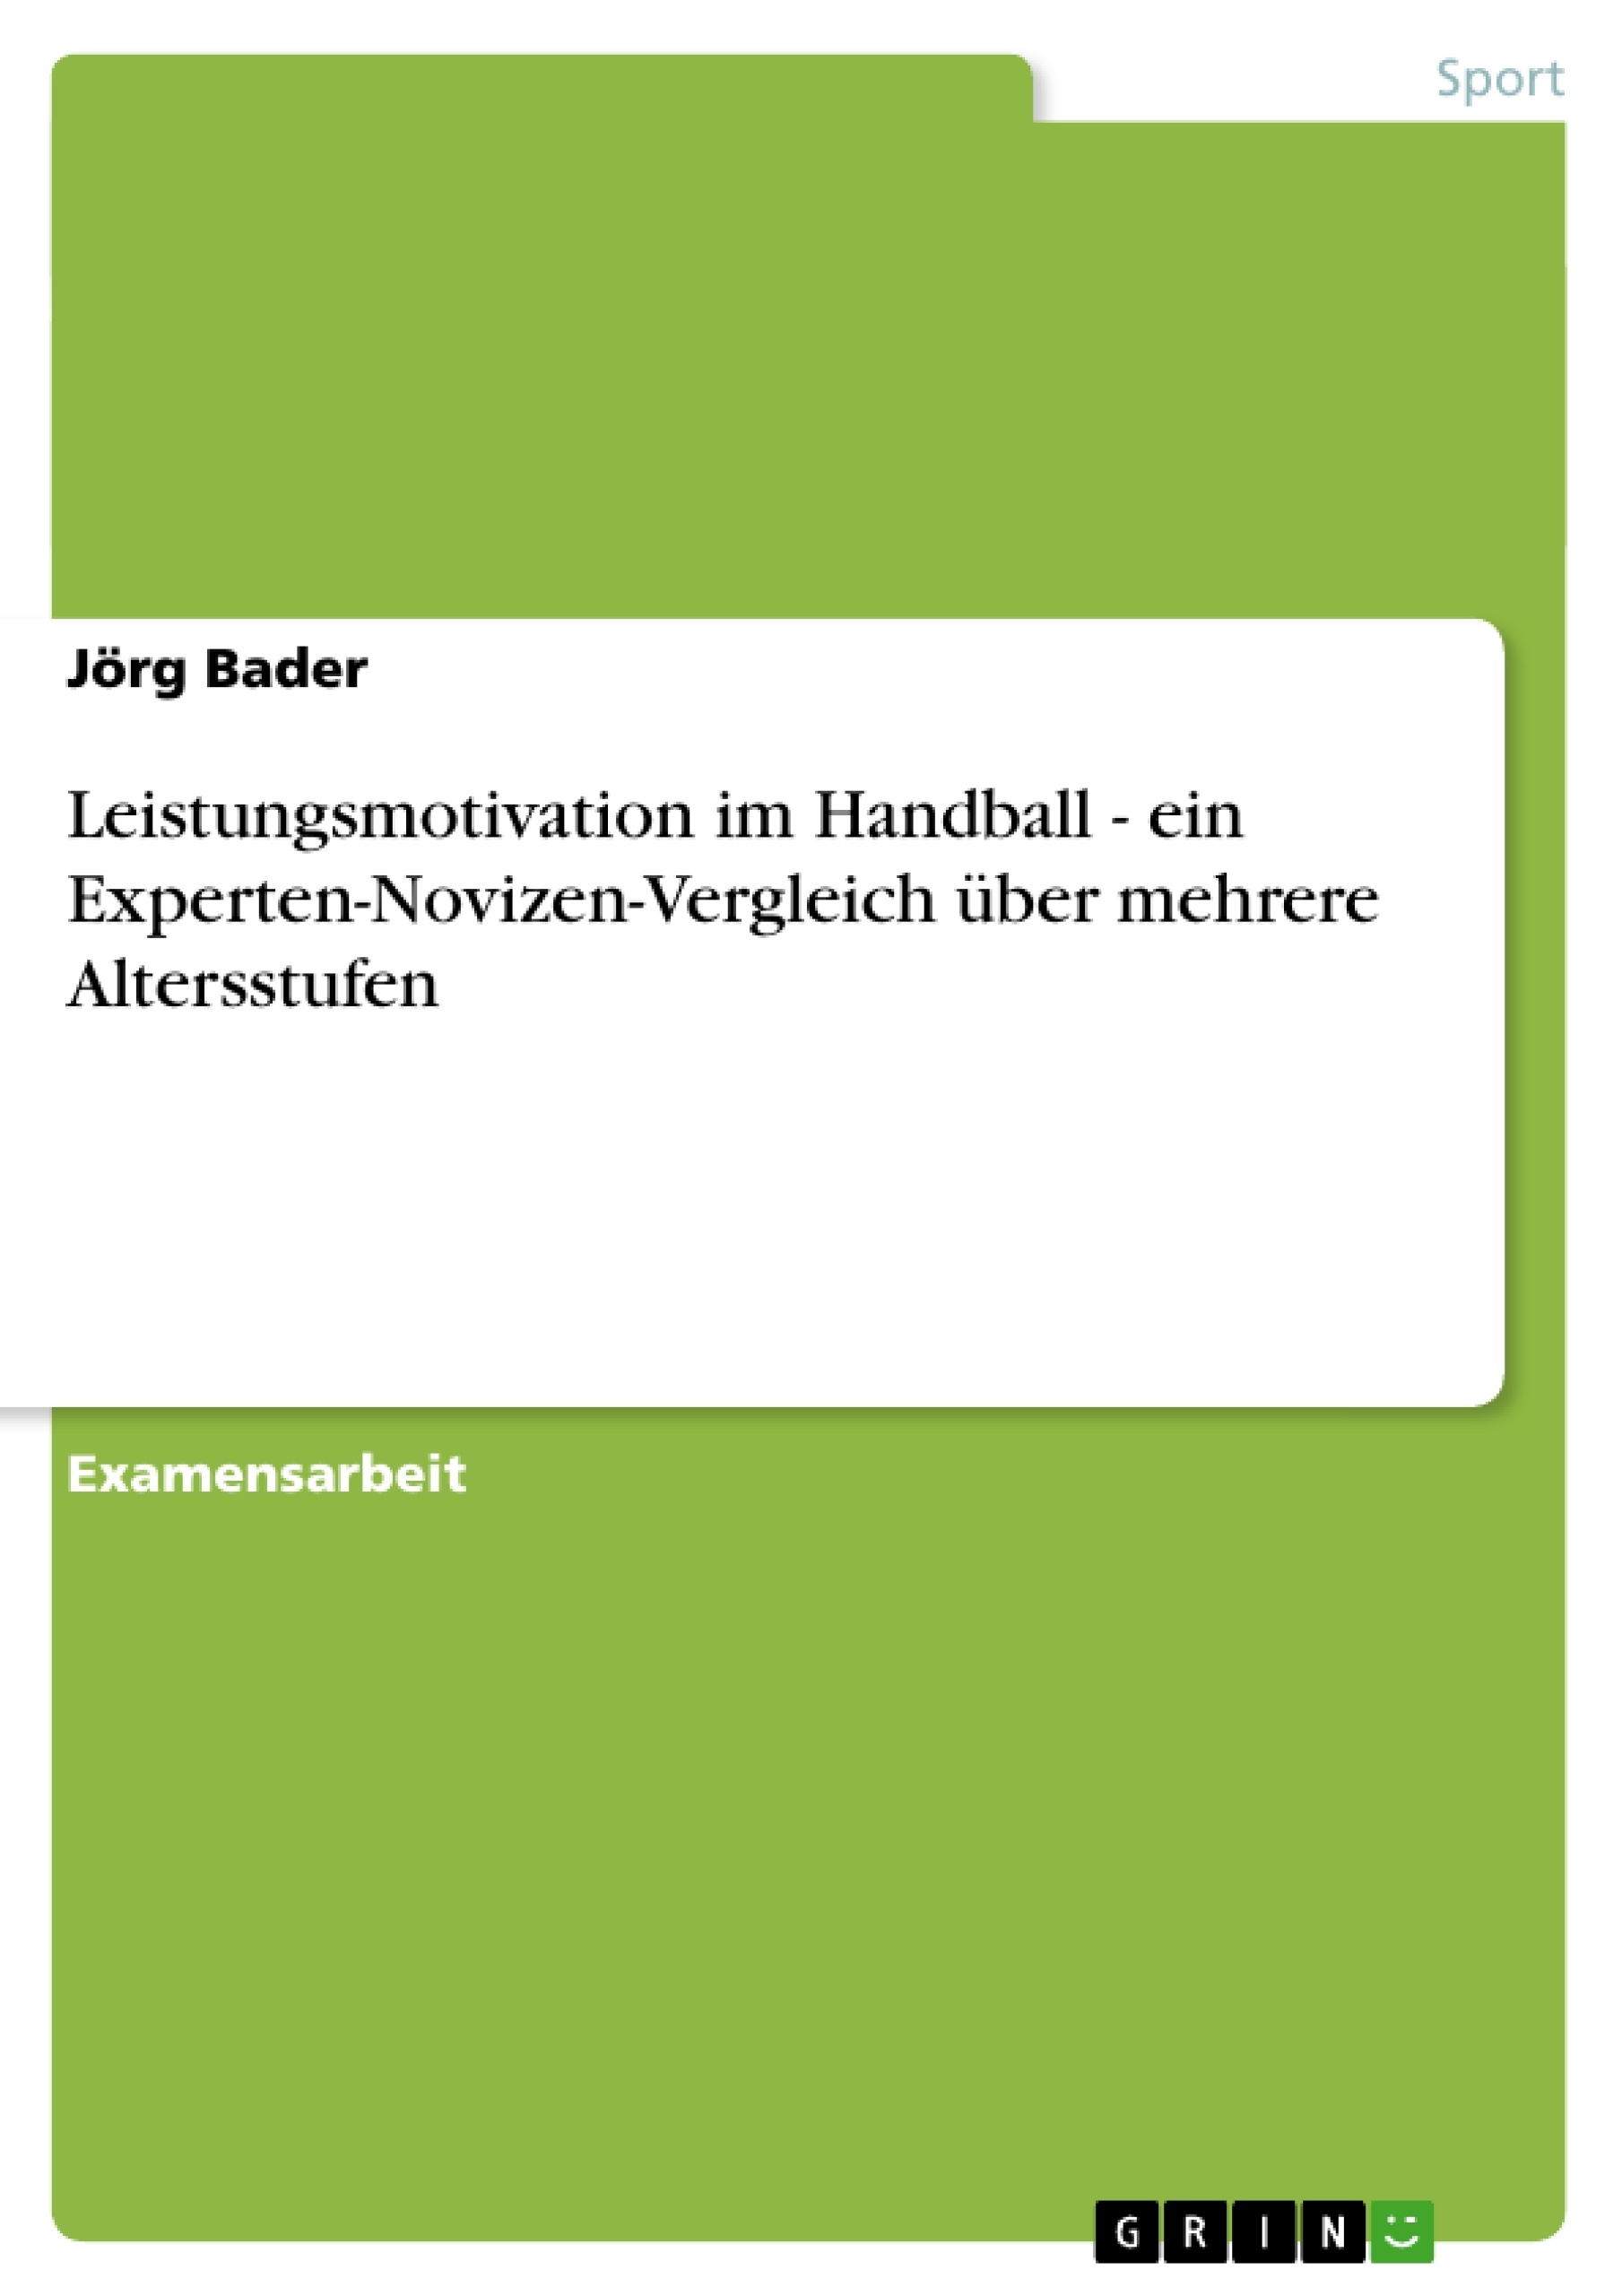 Titre: Leistungsmotivation im Handball - ein Experten-Novizen-Vergleich über mehrere Altersstufen